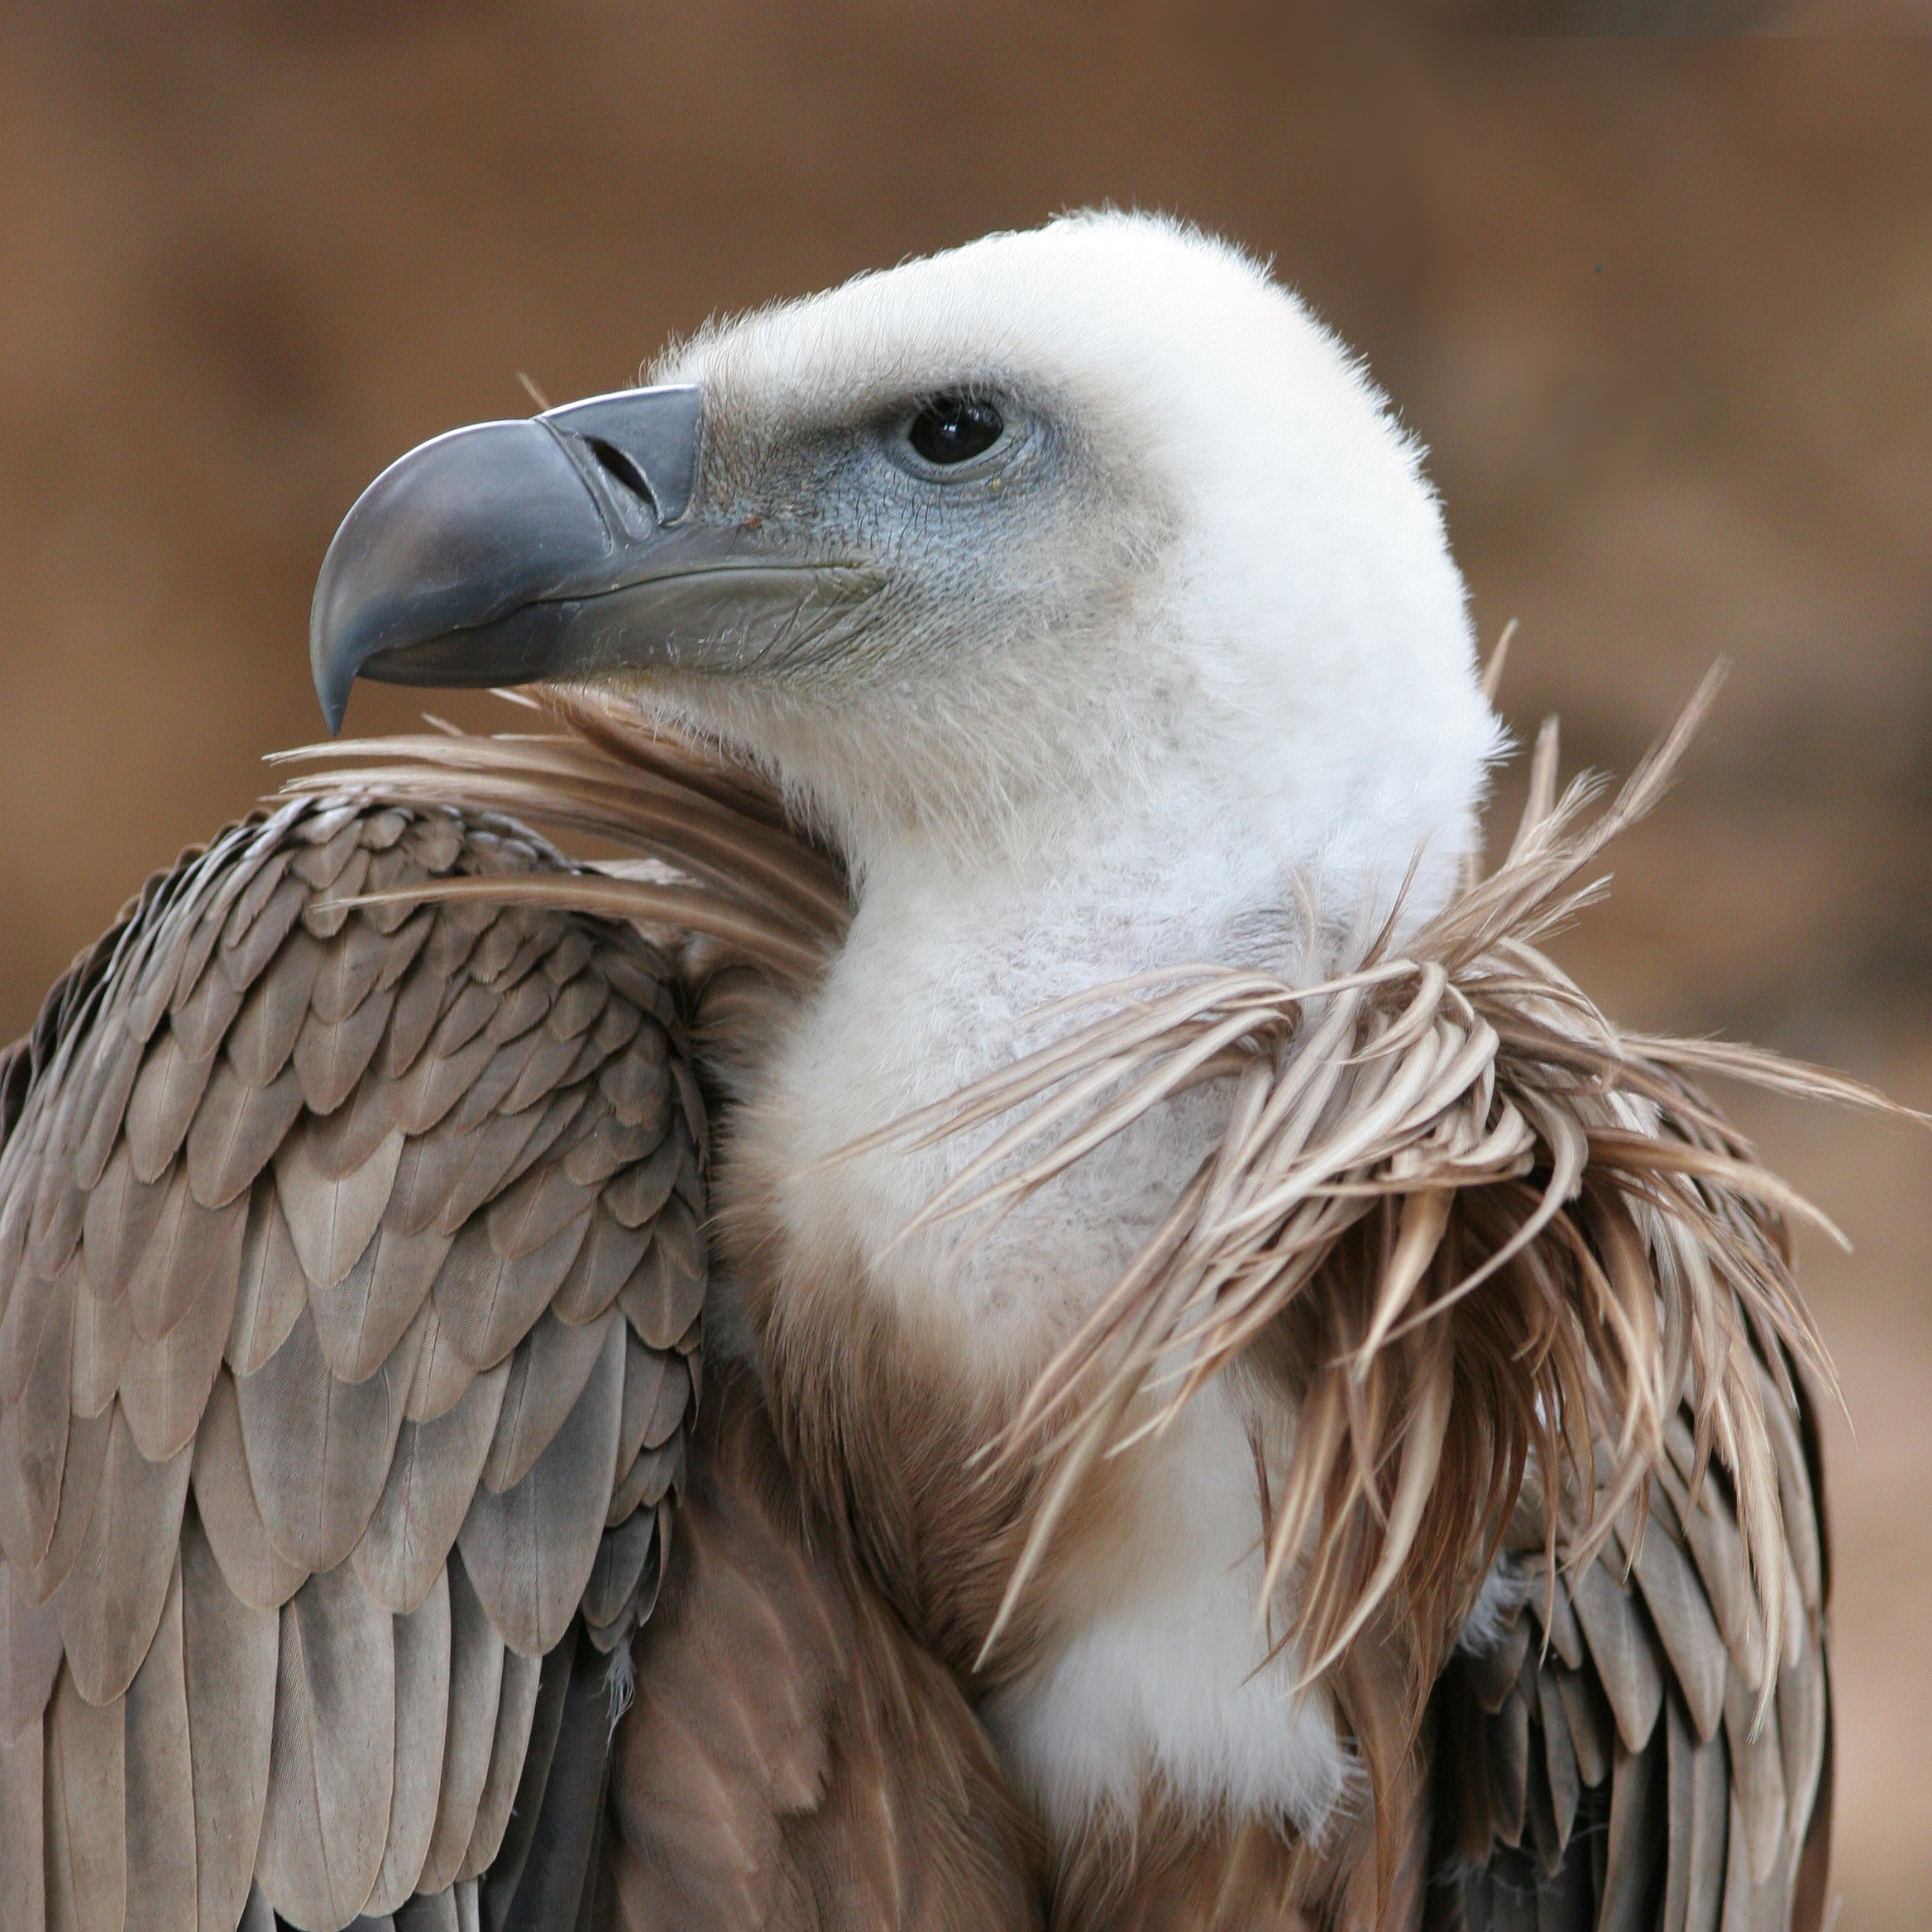 TOM CLARK: Samuel Johnson: The Vulture